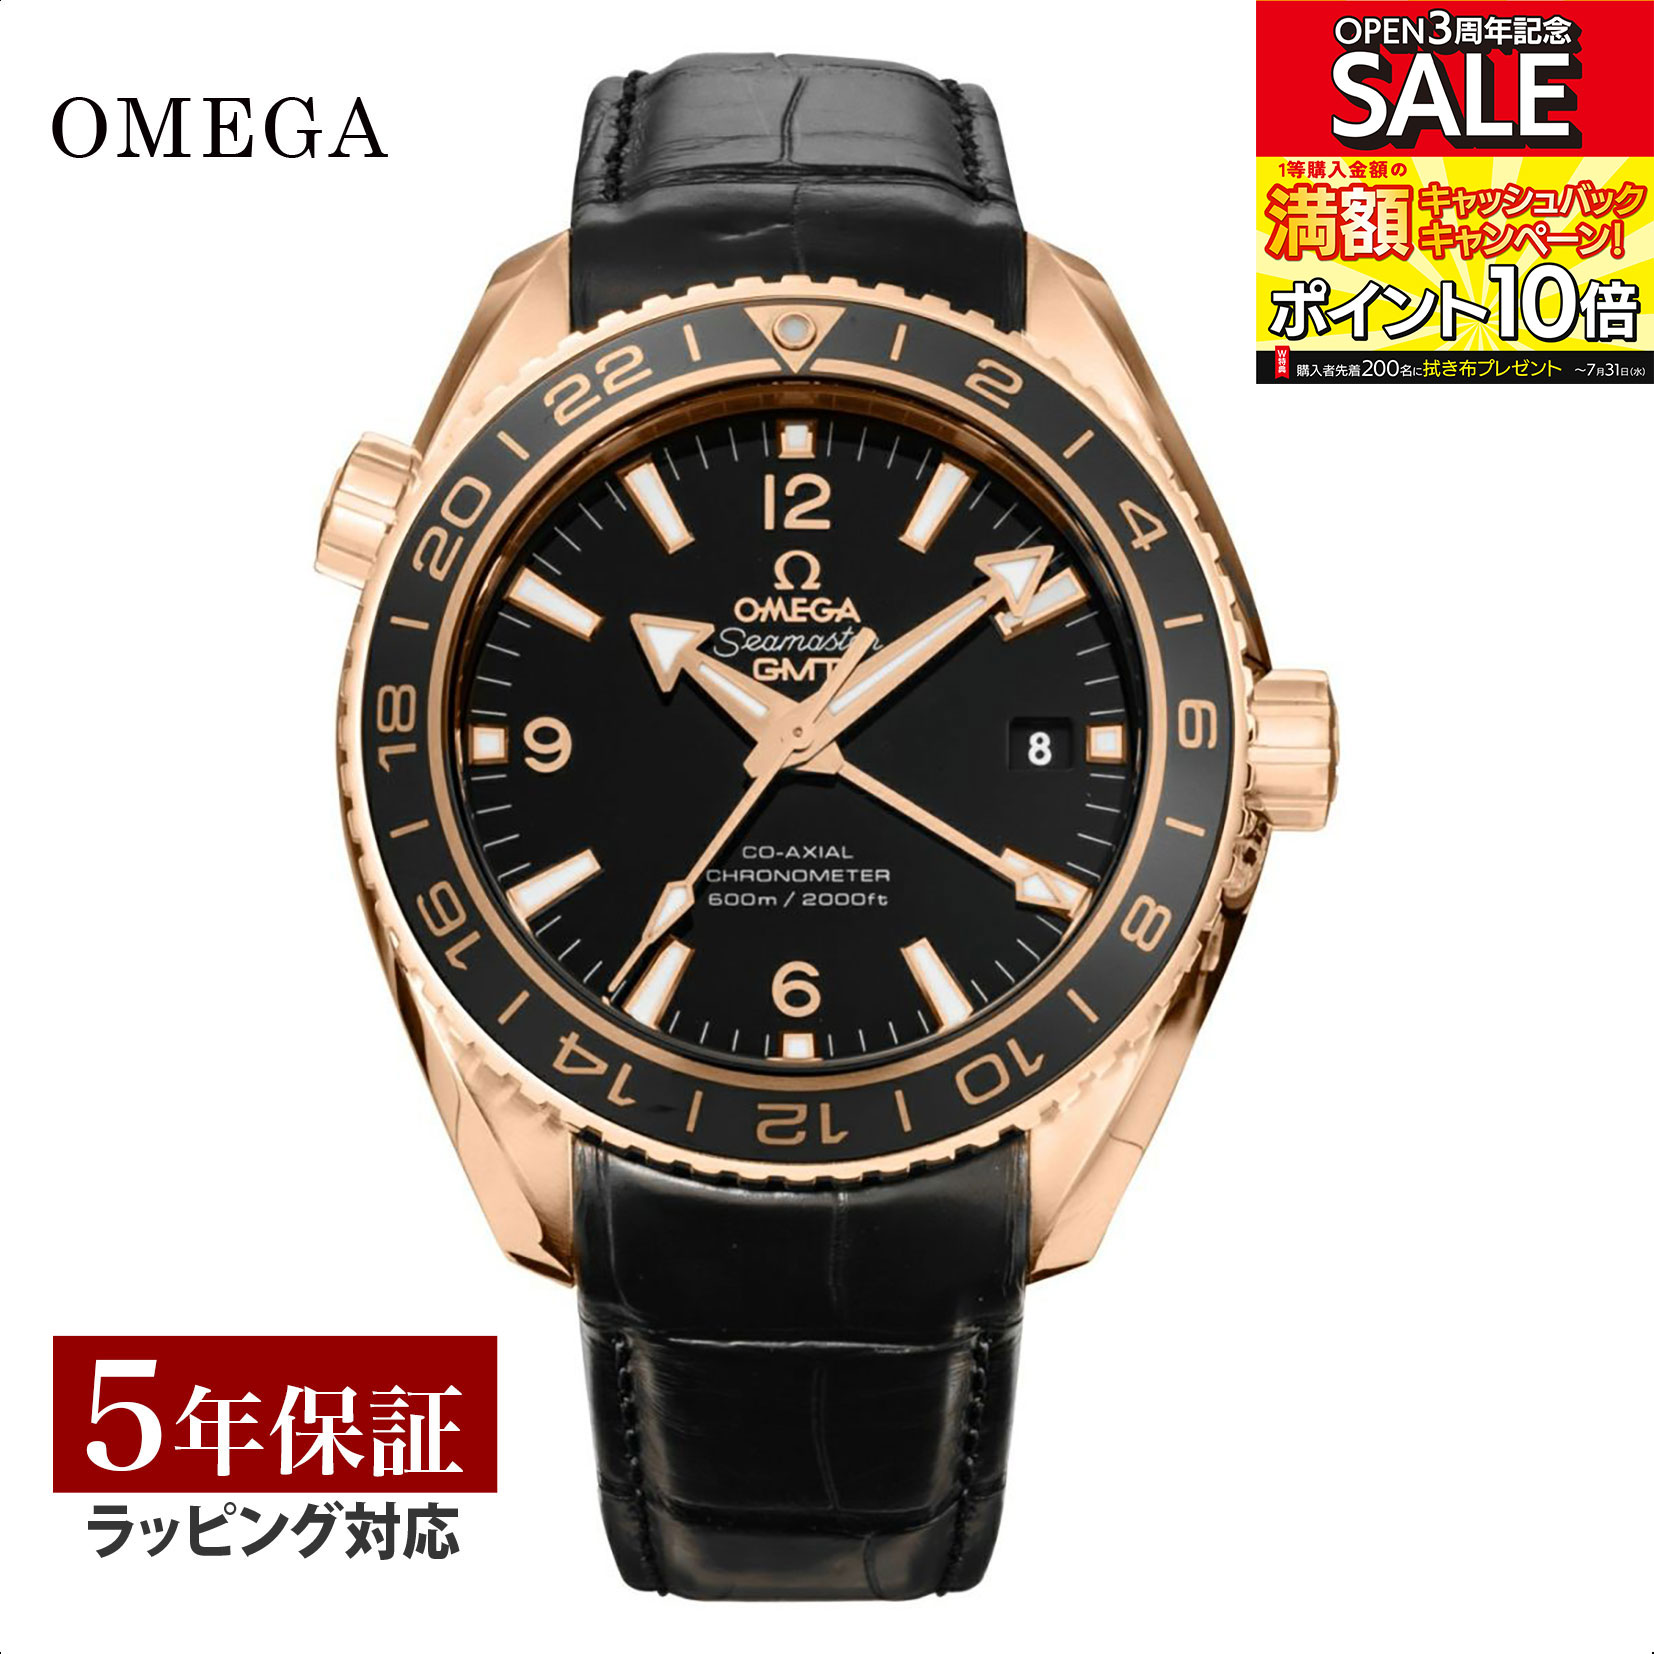 オメガ OMEGA メンズ 時計 SEAMASTER シーマスター コーアクシャル自動巻 ブラック 232.63.44.22.01.001 時計 腕時計 高級腕時計 ブランド